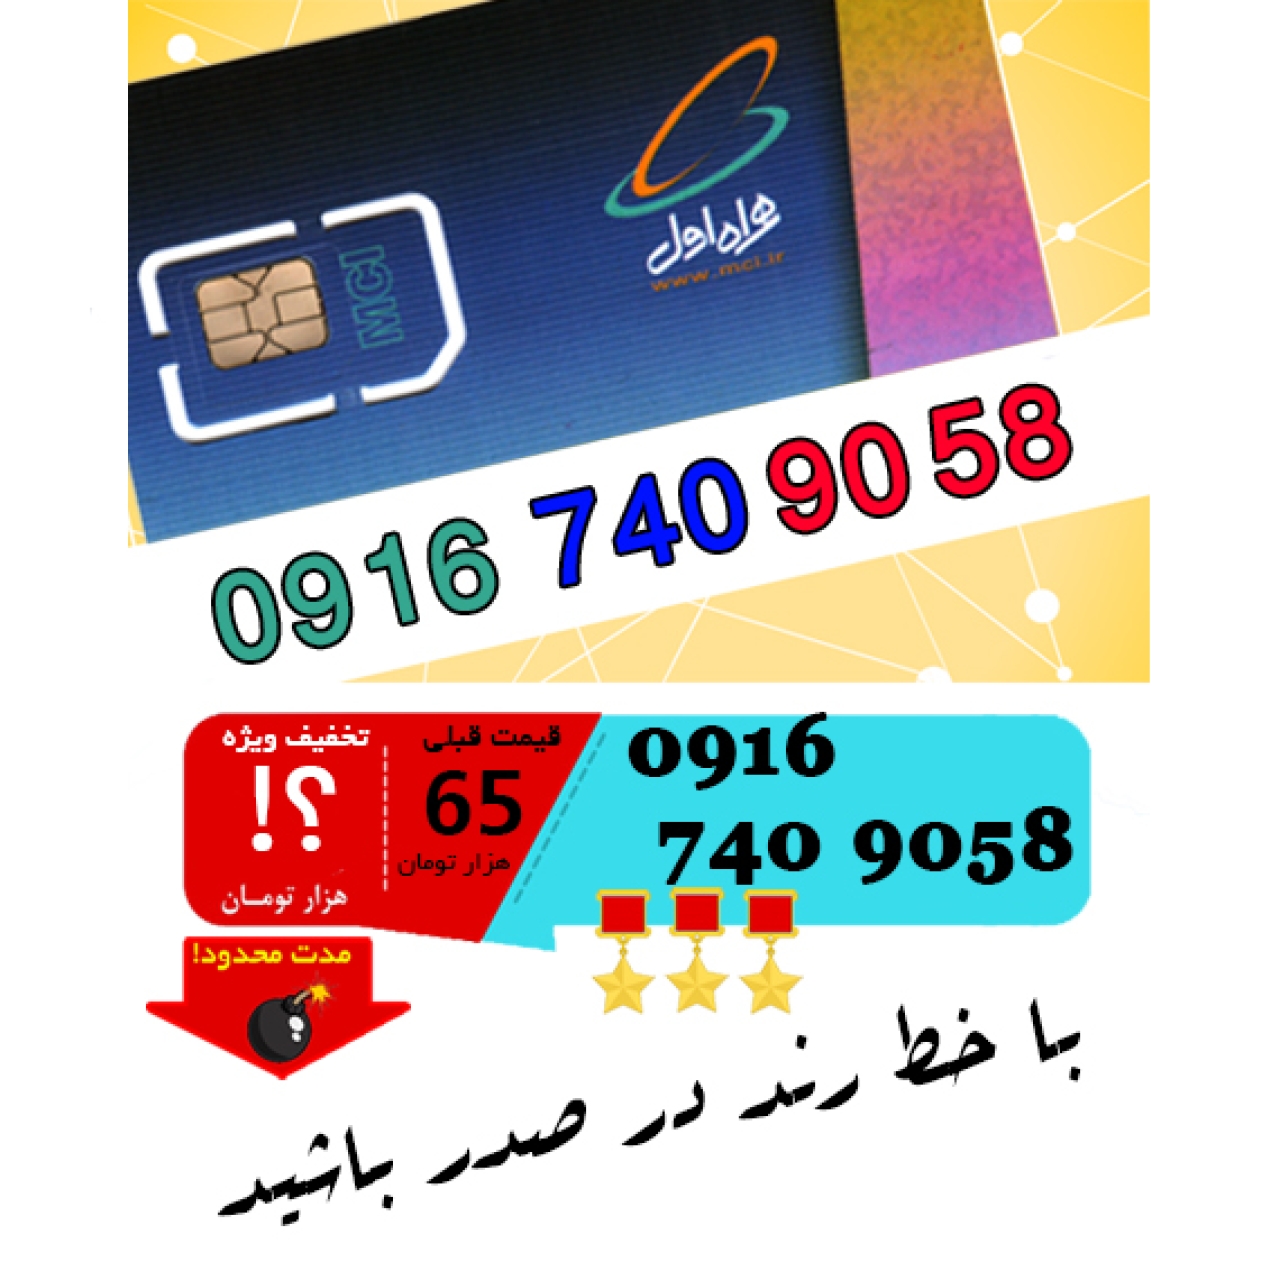 سیم کارت اعتباری رند همراه اول 09167409058